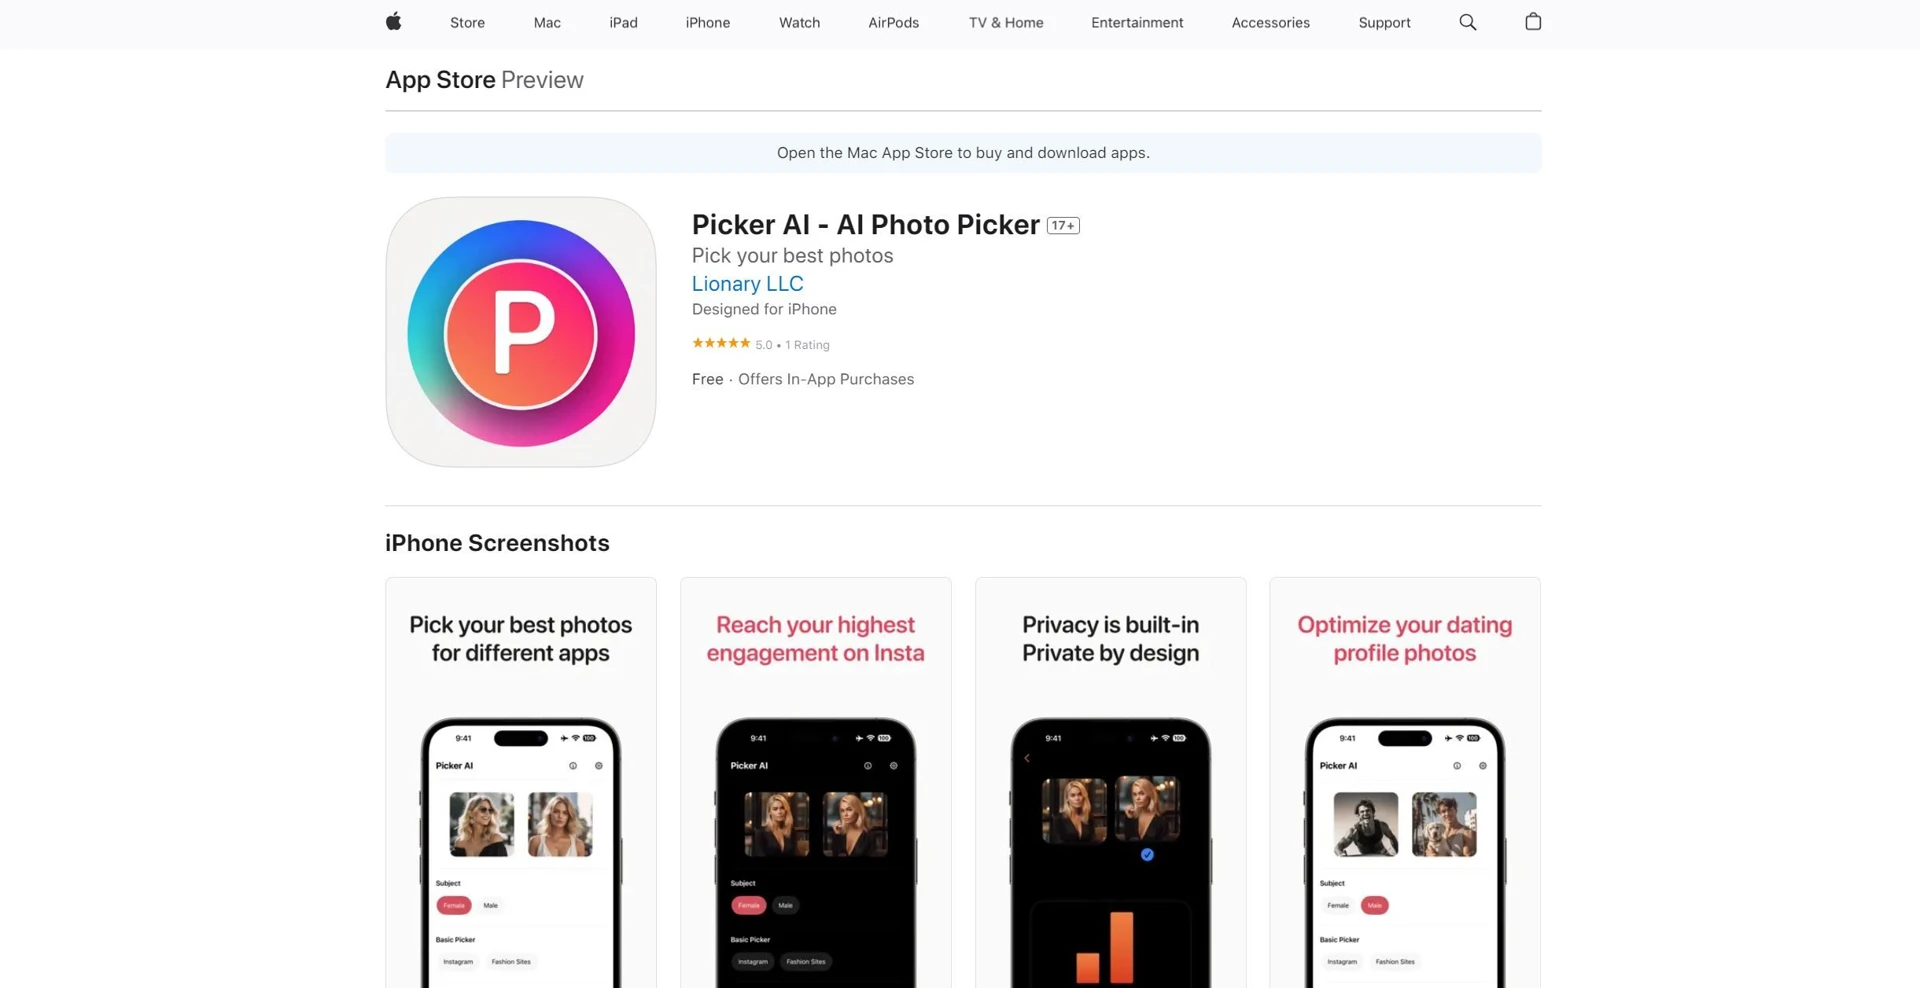 Picker AI - AI Photo Pickerwebsite picture